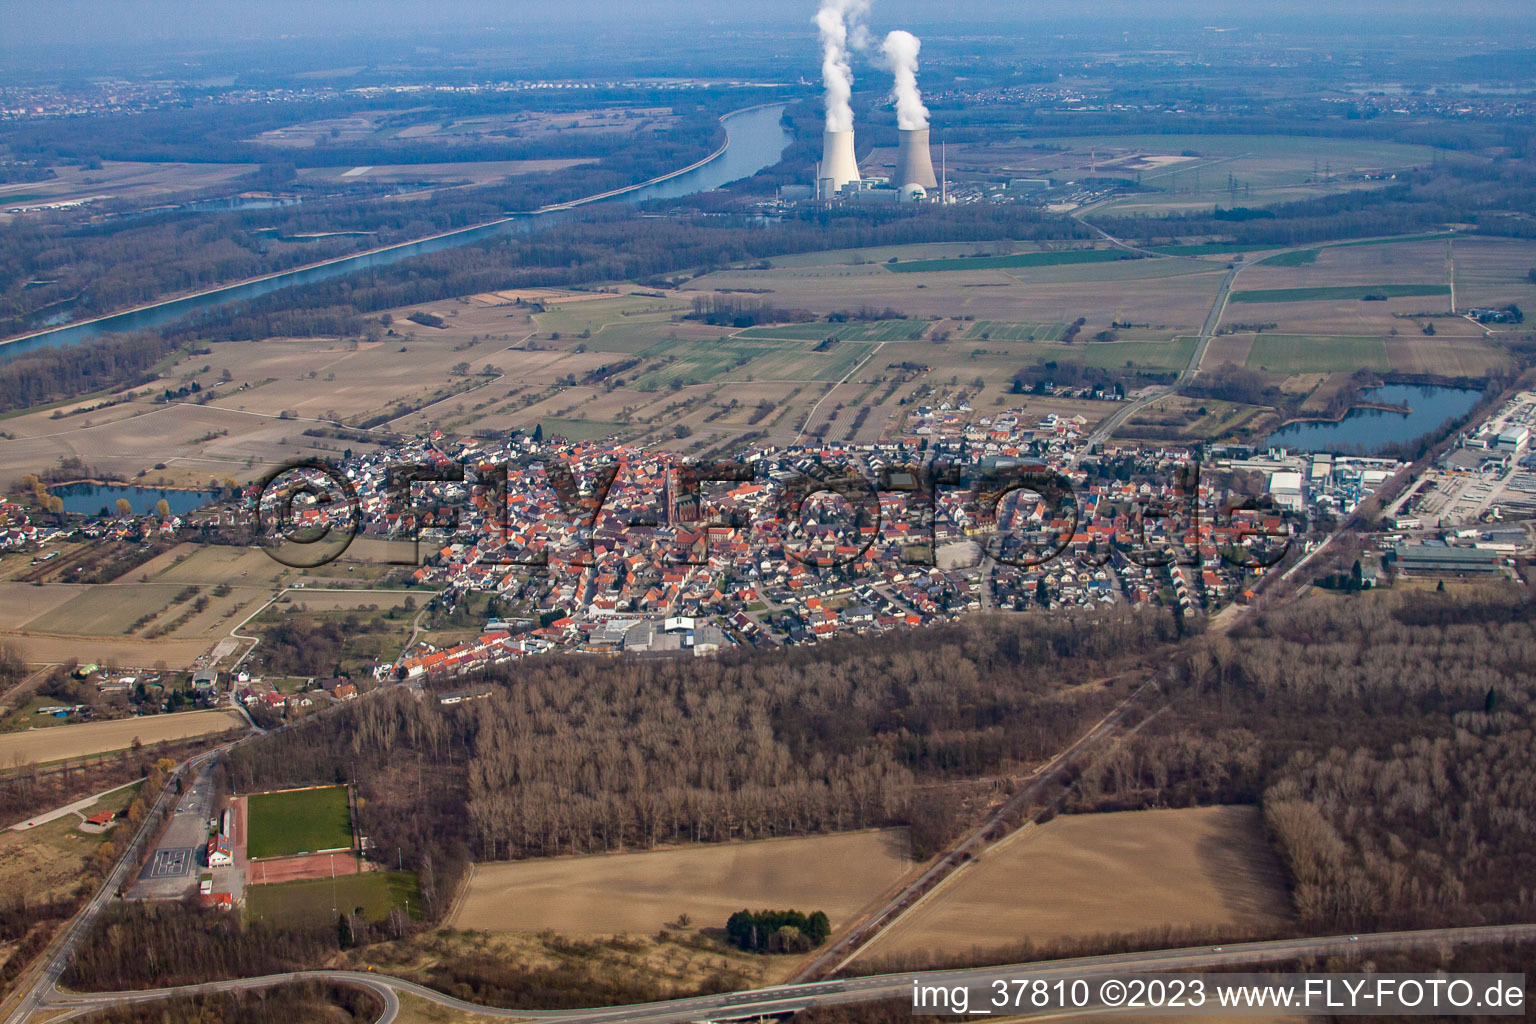 Vue aérienne de Quartier Rheinsheim in Philippsburg dans le département Bade-Wurtemberg, Allemagne